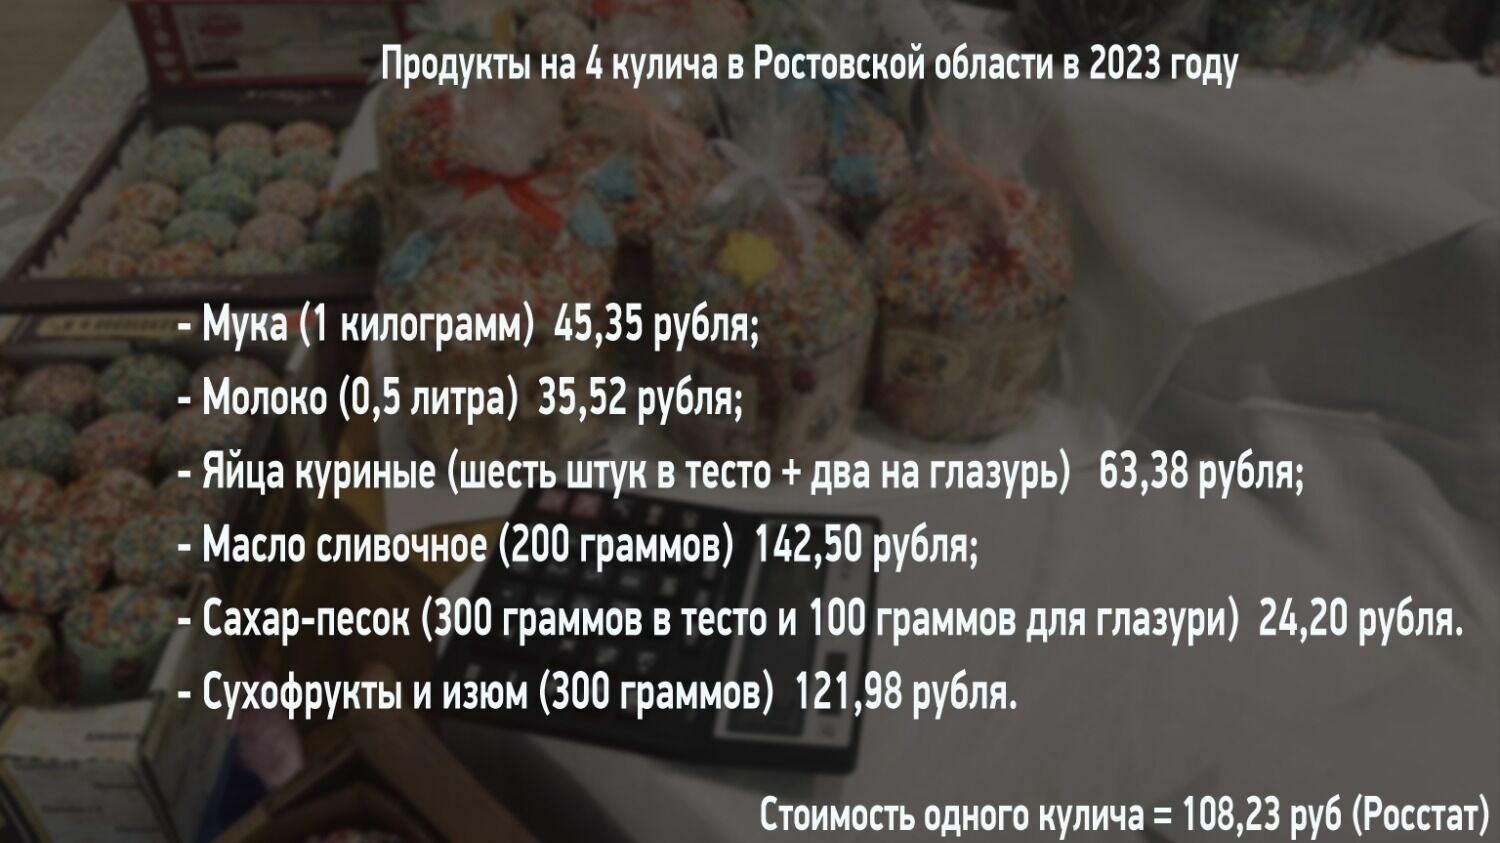 Приведем стоимость основных продуктов для кулича в Ростовской области (для расчета взяты данные Росстата)